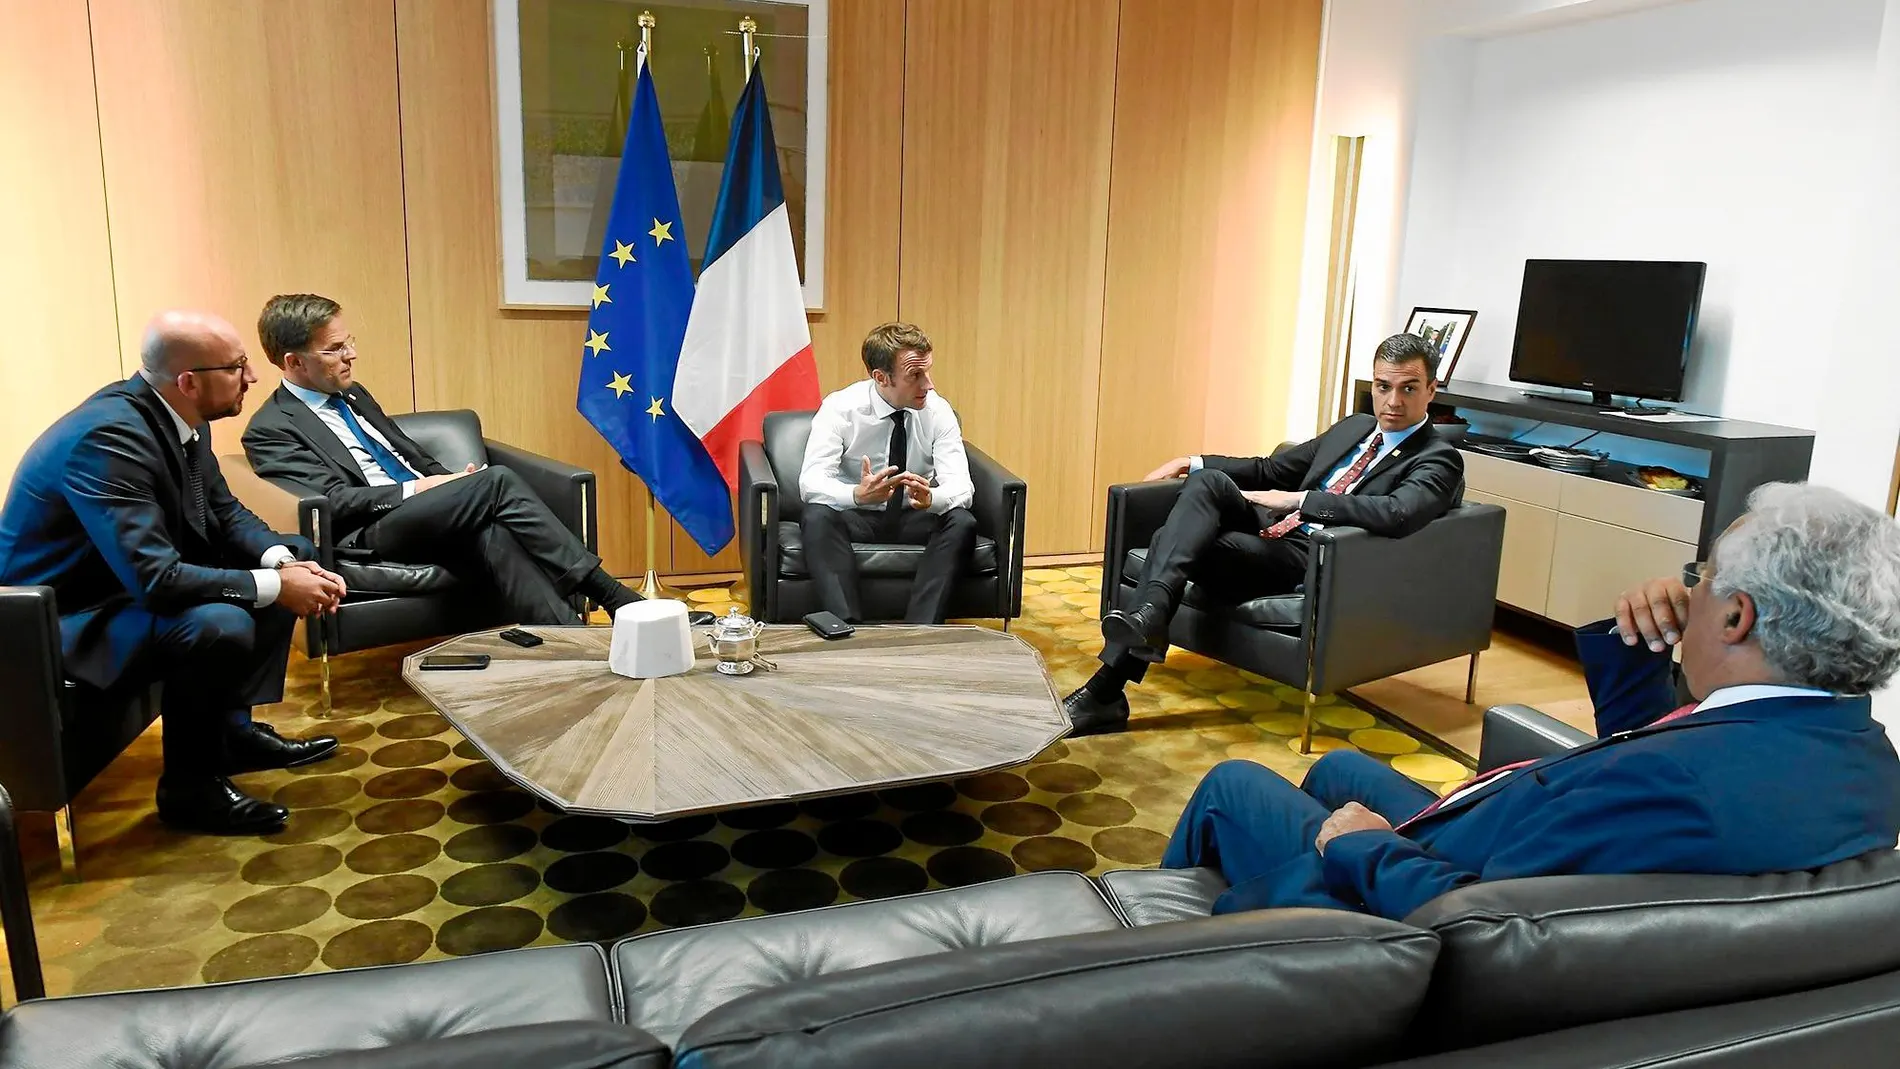 Imagen facilitada por Moncloa de Sánchez, Macron, Rutte y Costa que plasma la alianza de los líderes liberales y socialdemócratas en esta legislatura